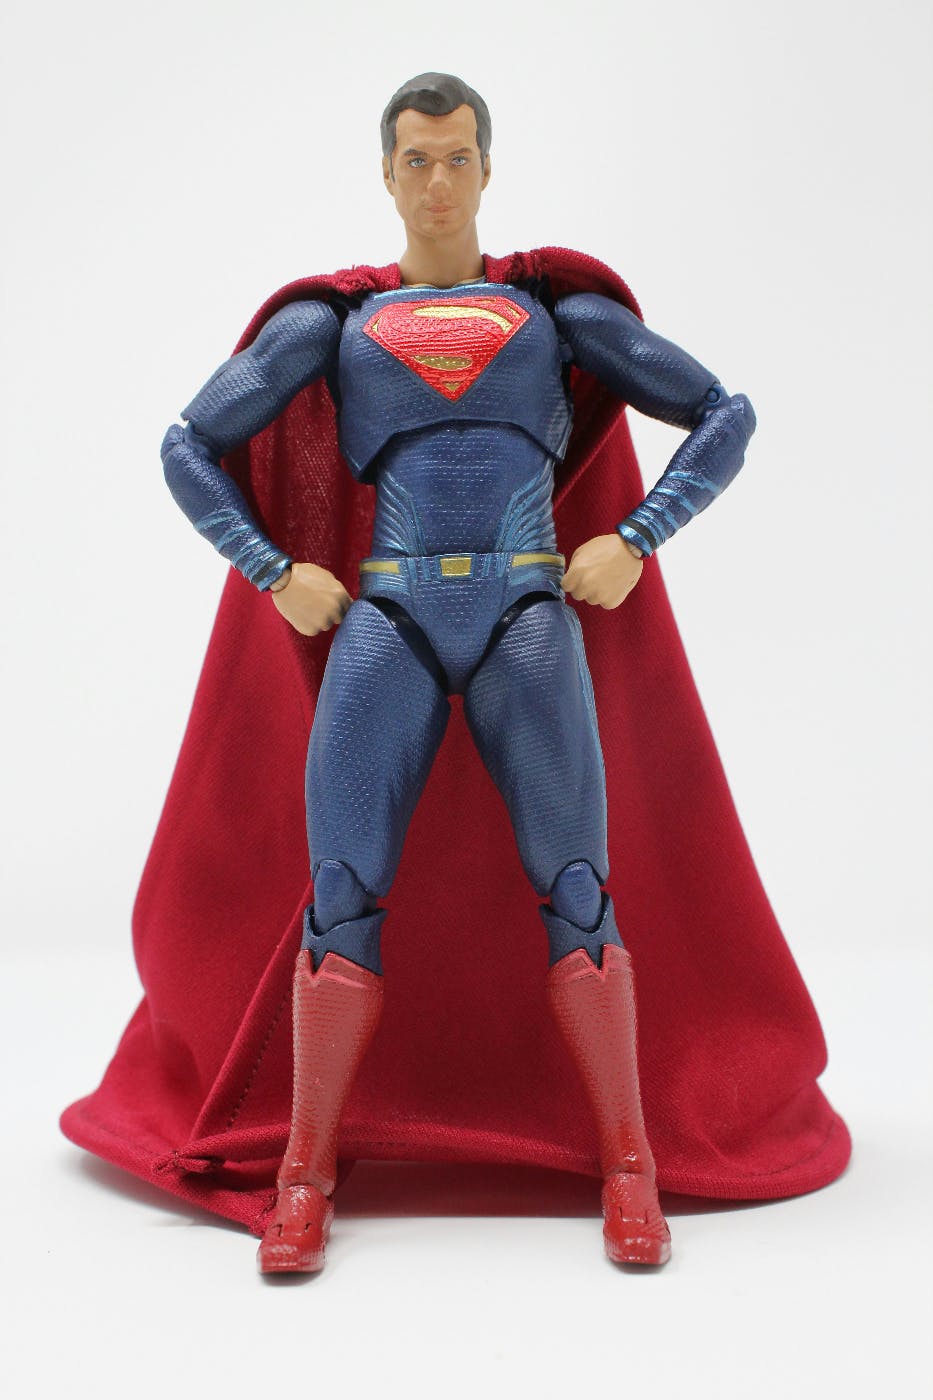 A Superman action figure